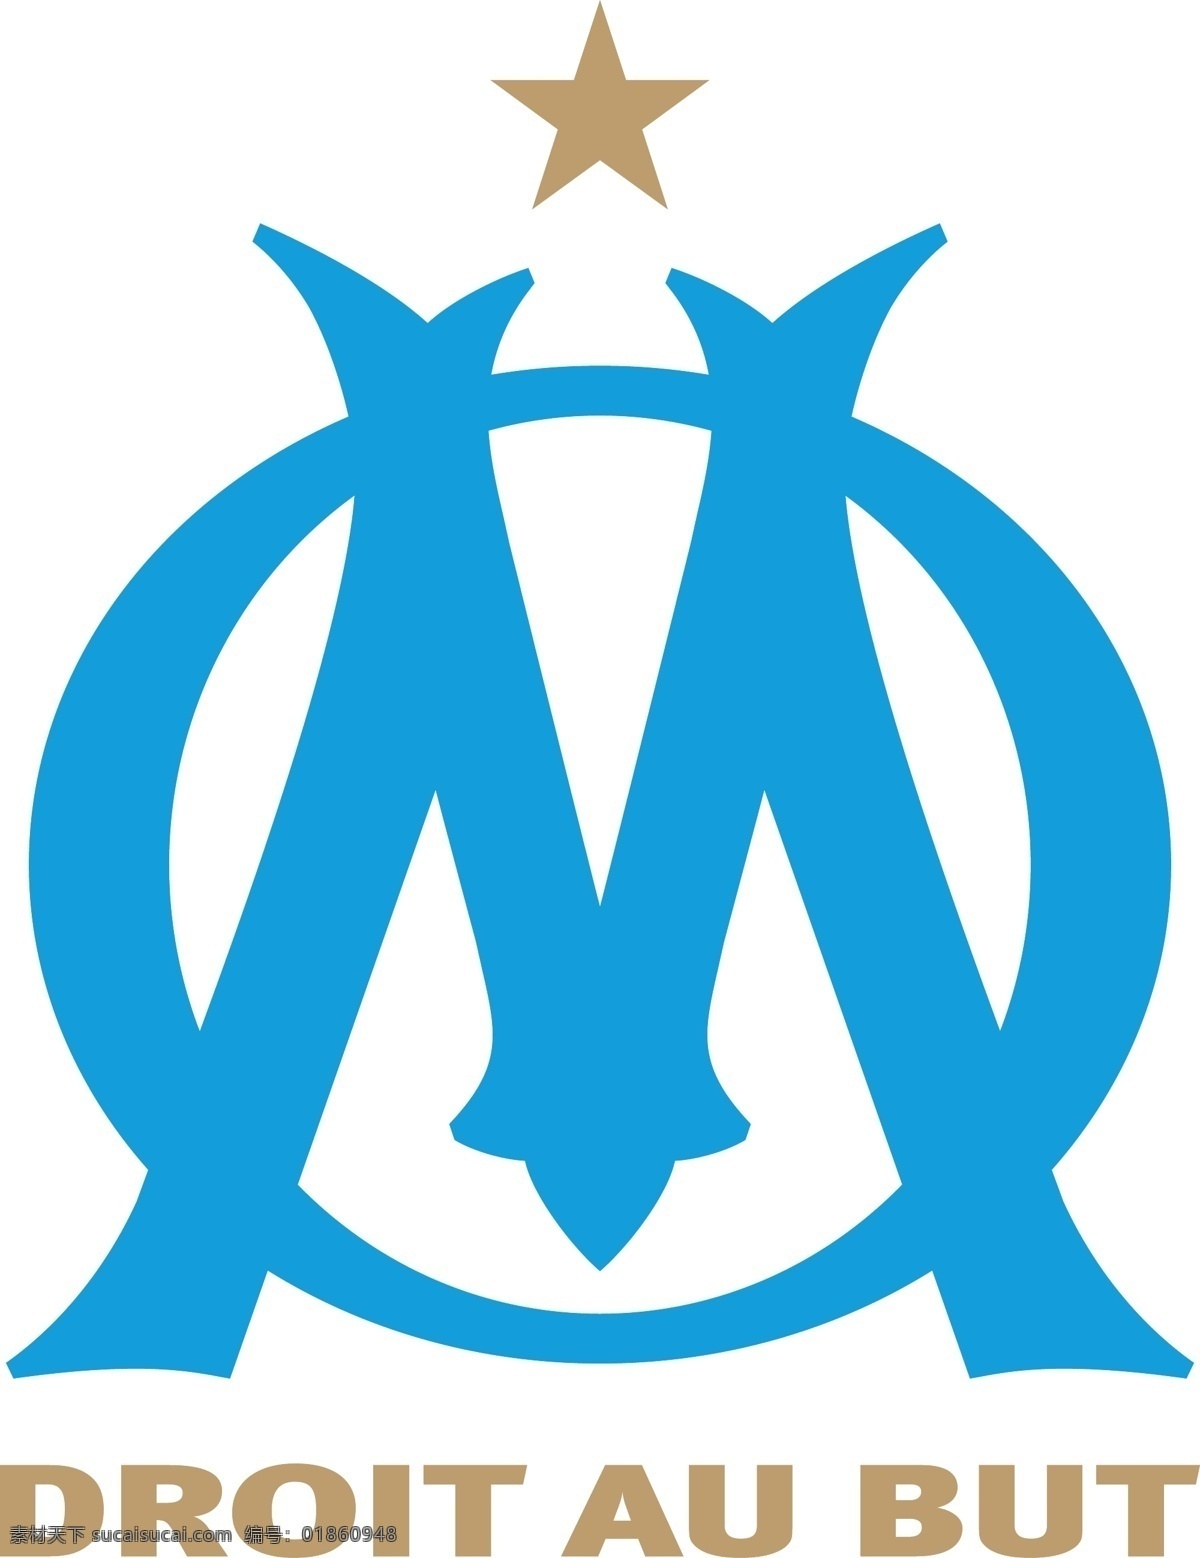 奥林匹克 马赛 足球 俱乐部 徽标 logo设计 比赛 法国 法甲 甲级 联赛 矢量图